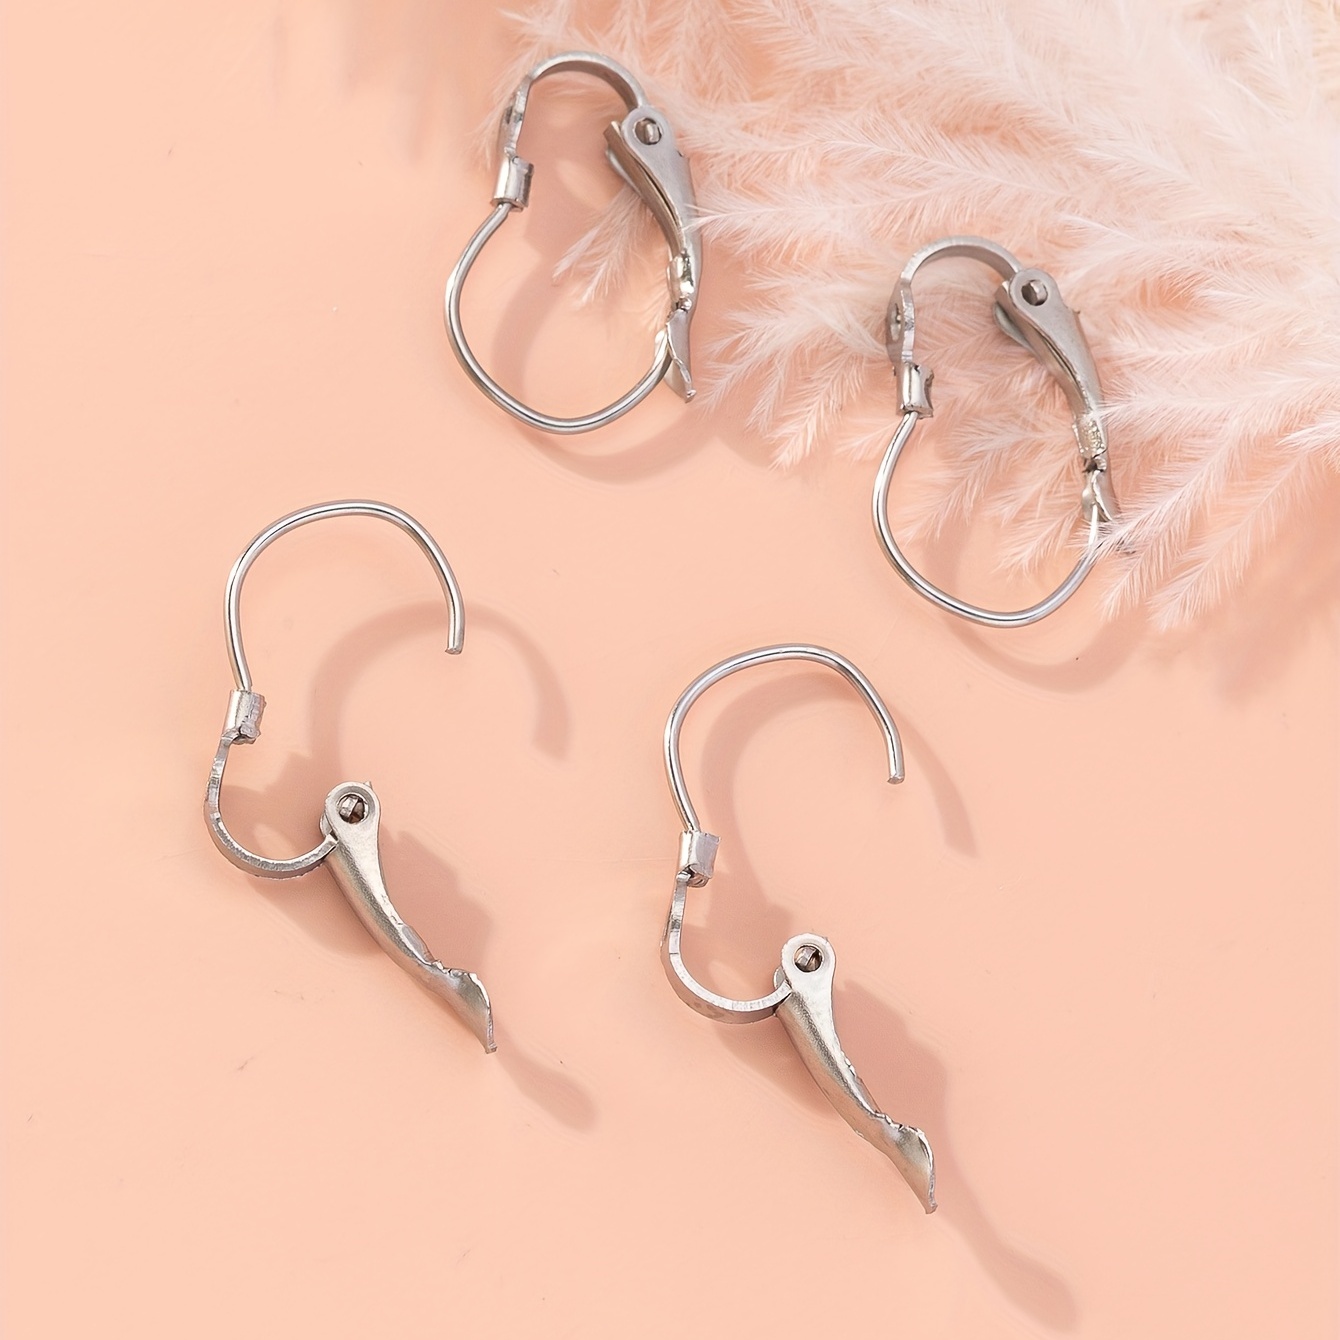 Earring hooks for sensitive ears, Hypoallergenic jewelry making